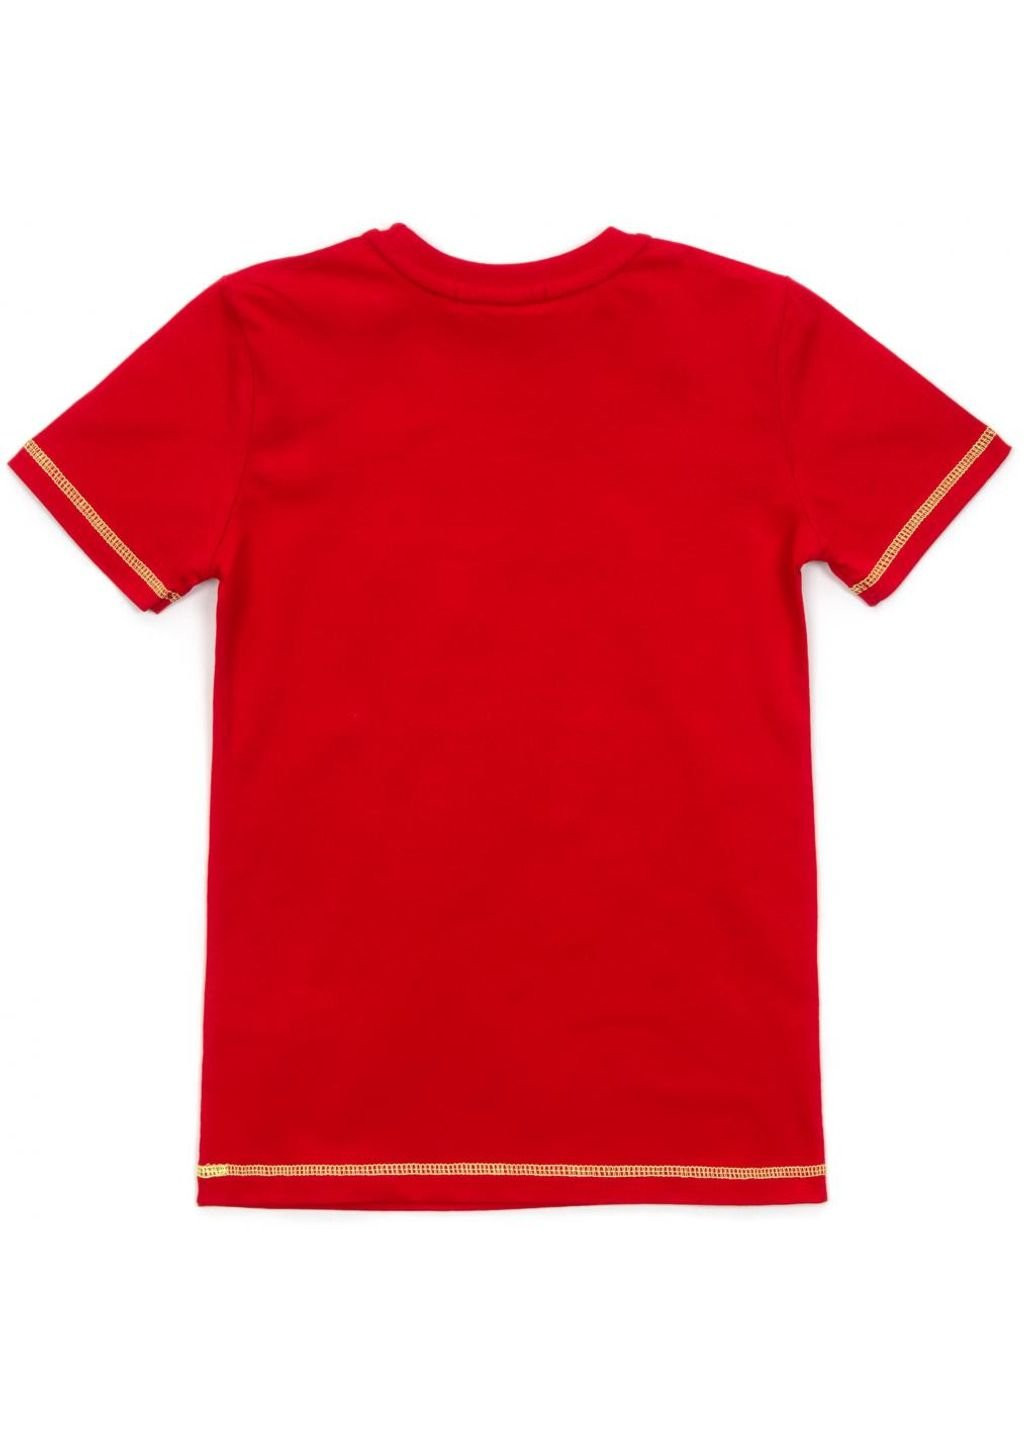 Красная демисезонная футболка детская "trick" (15692-134b-red) Breeze